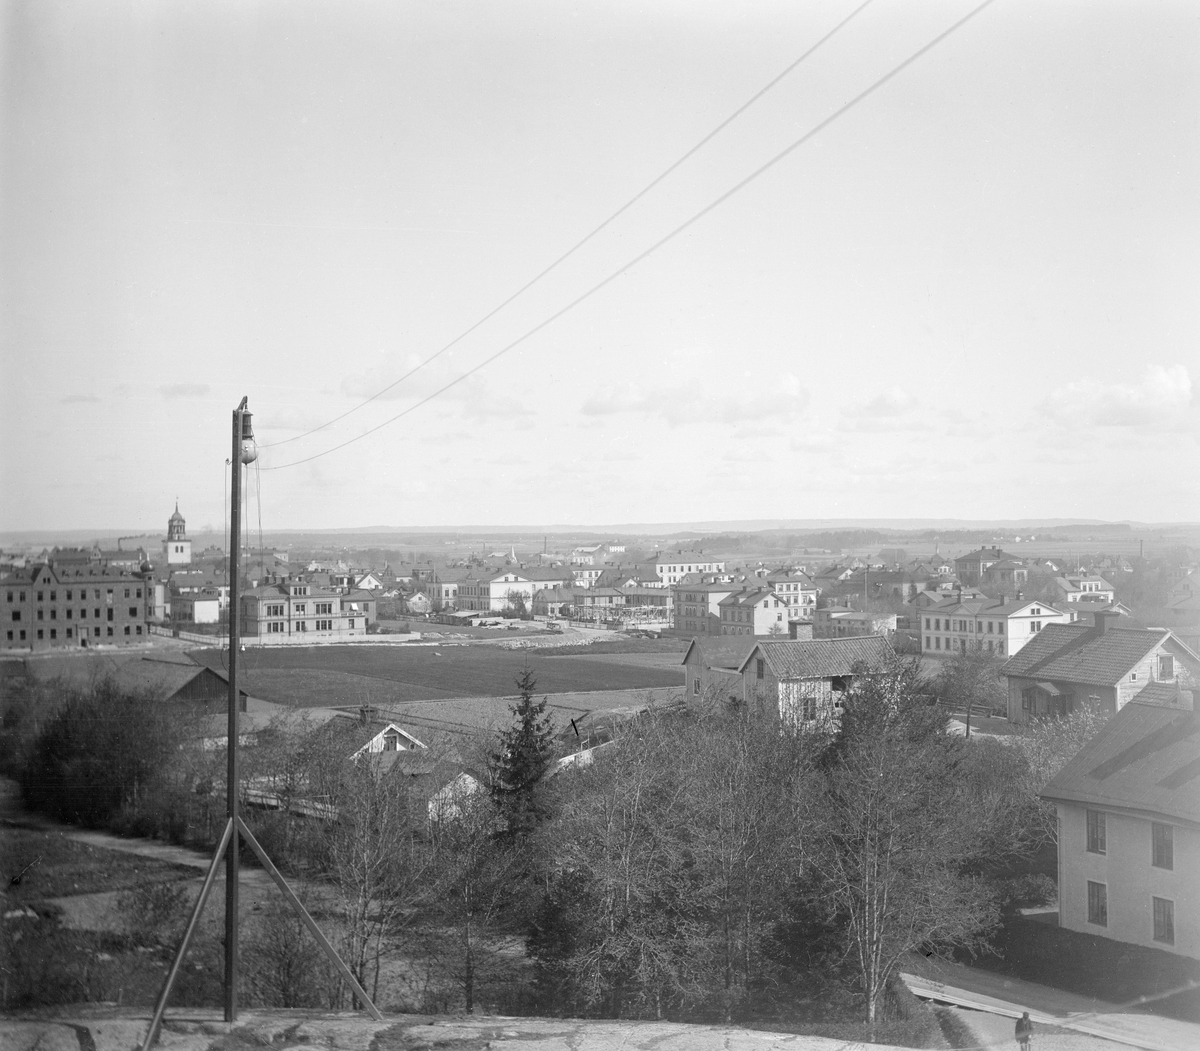 Utsikt över Linköping. Vy mot nordost. Bilden kan dateras till 1896 genom uppförandet av Linnégatan 25 som ses till vänster. På grund av defekter är bilden beskuren.